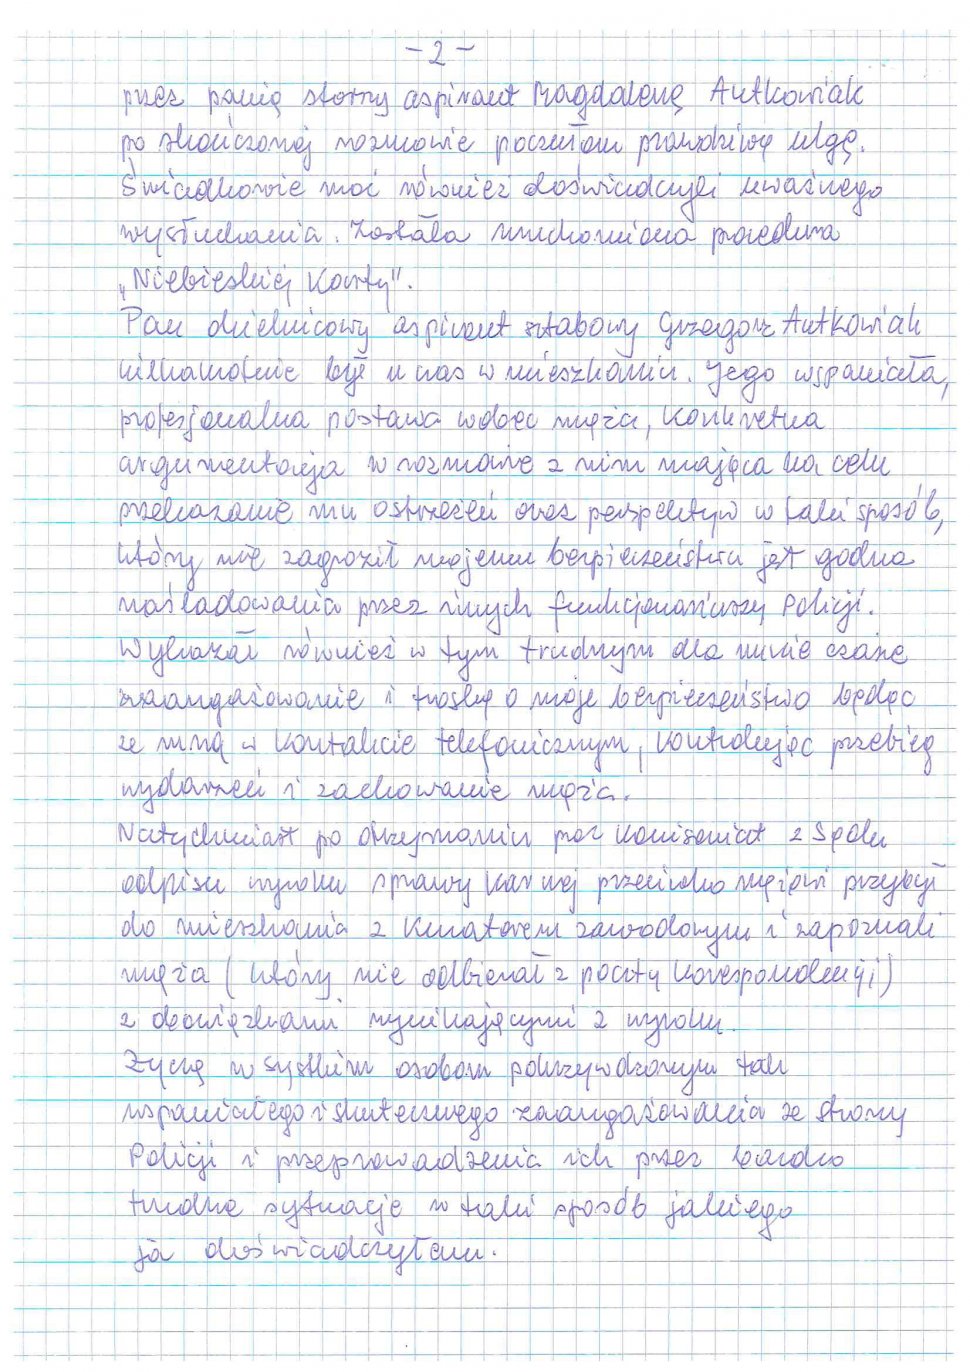 zdjęcie listu - podziękowania dla policyjnego małżeństwa z Katowic